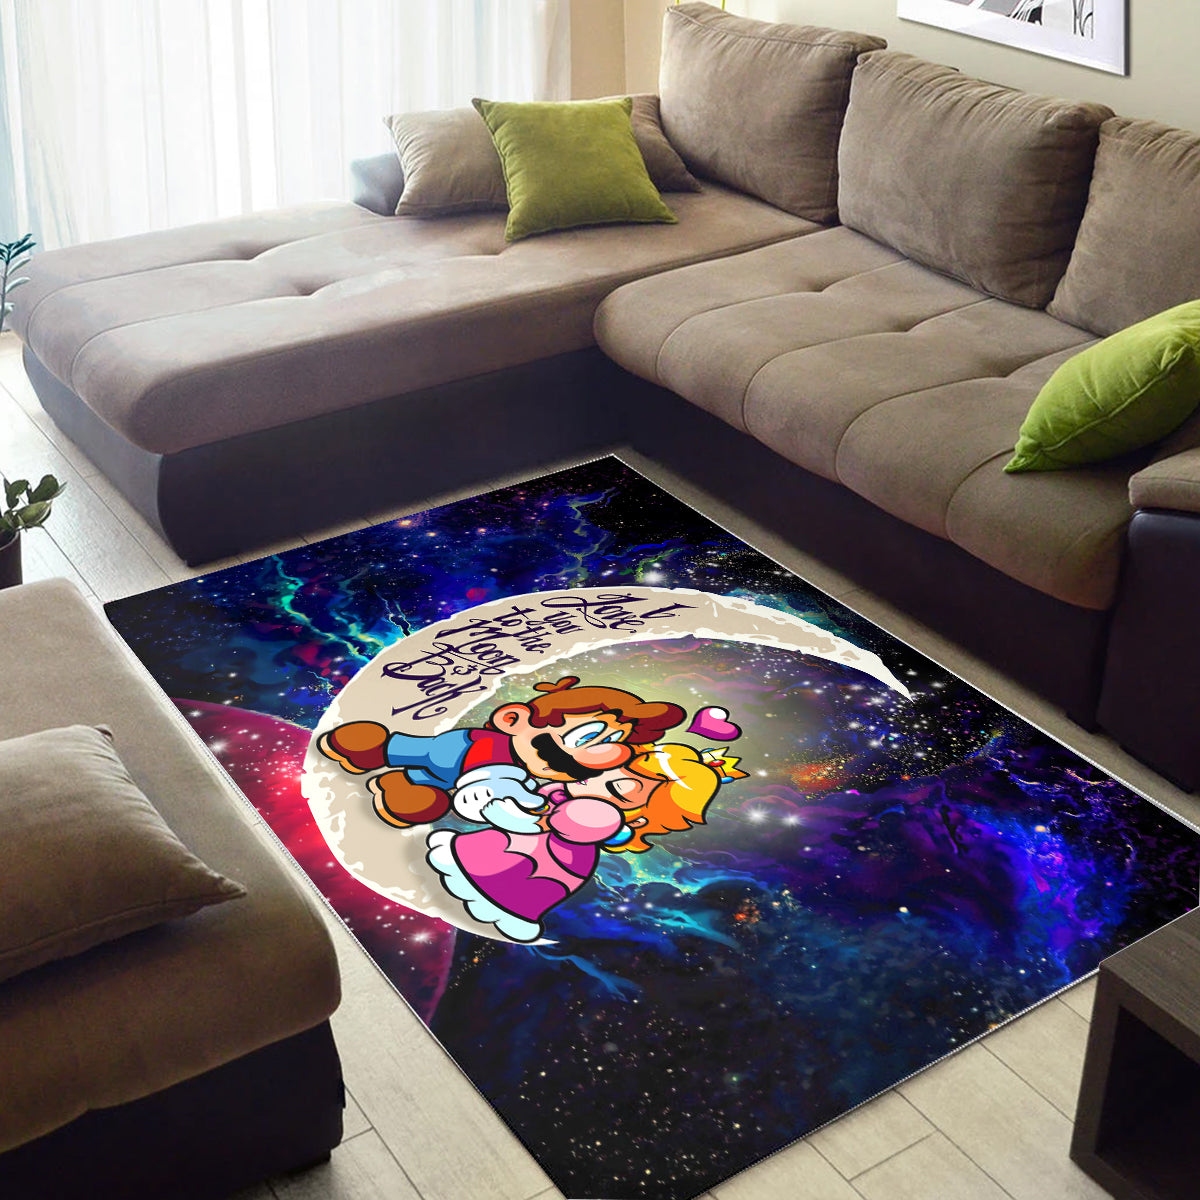 Mario Couple Love You To The Moon Galaxy Carpet Rug Home Room Decor